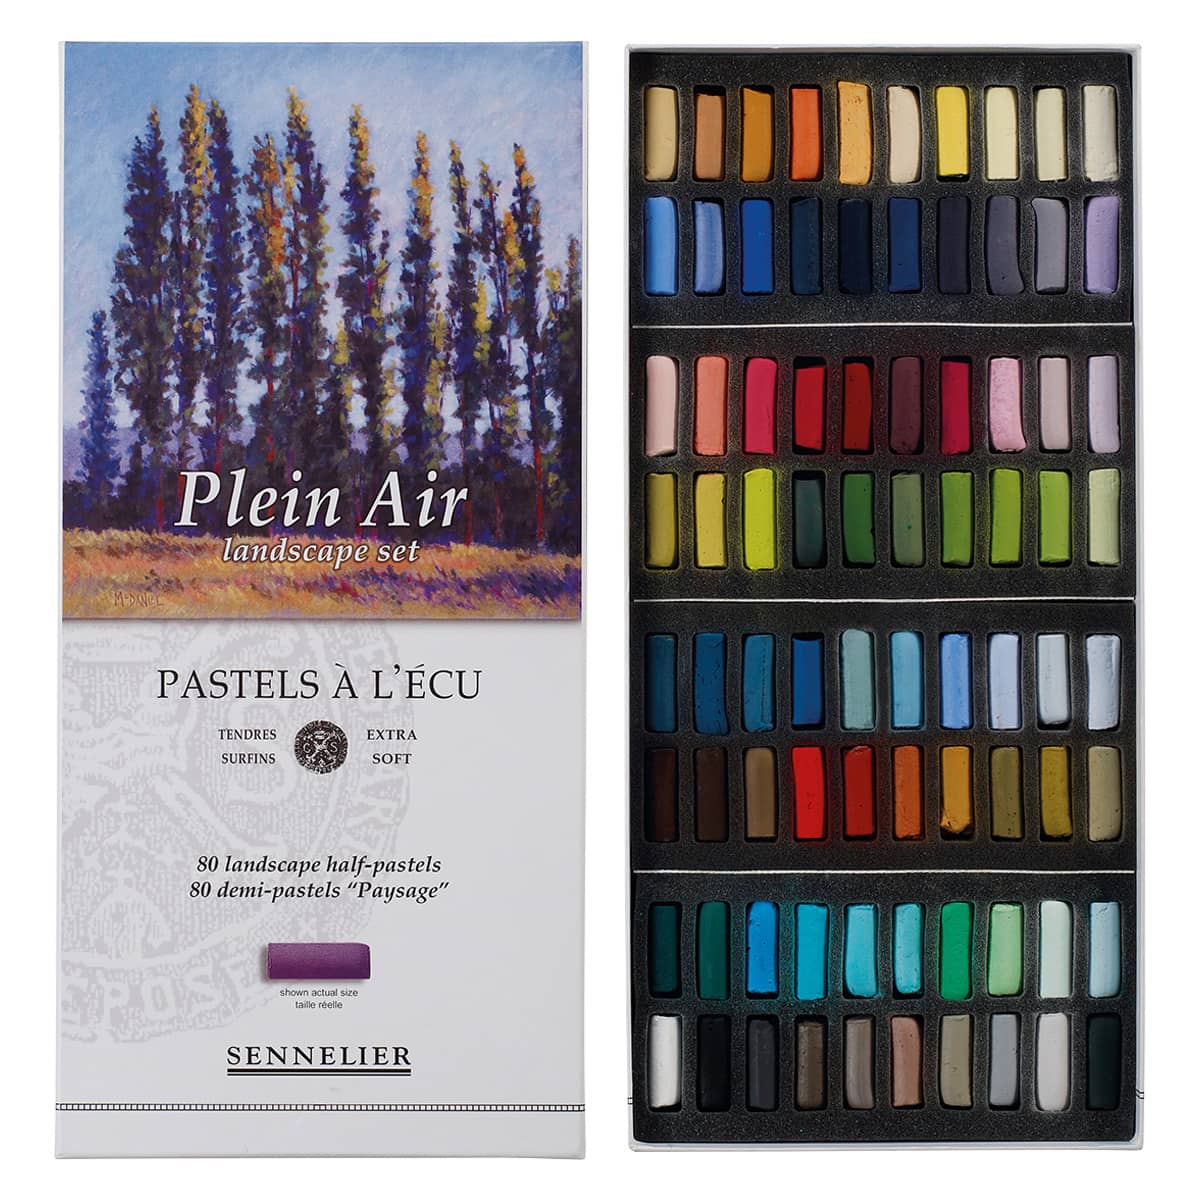 Sennelier Extra Soft Pastel Cardboard Box Set of 80, Plein Air Landscape - Half-Sticks